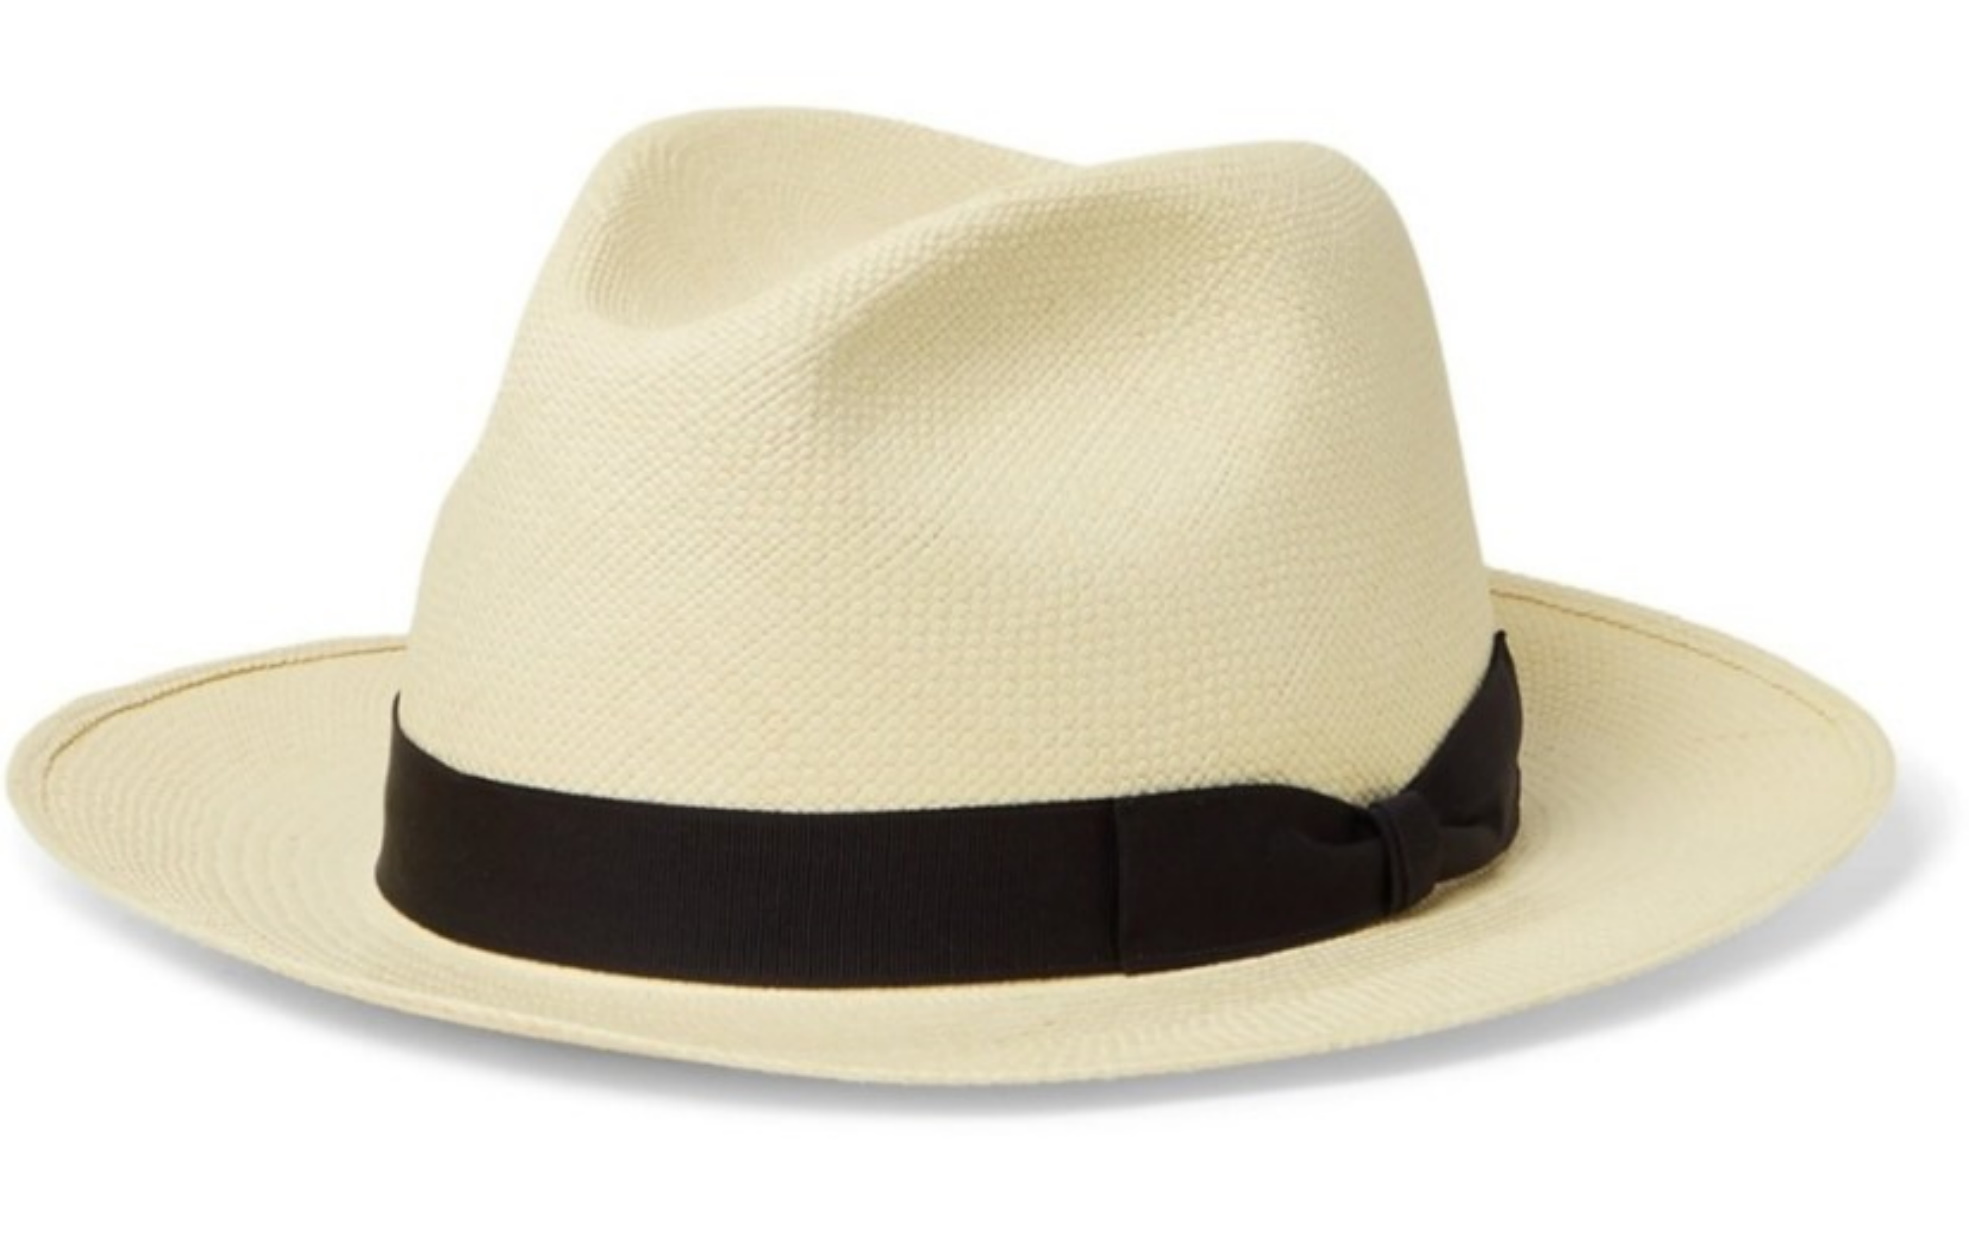 Καπέλο Παναμά: Το πιο στυλάτο καπέλο όλων των εποχών